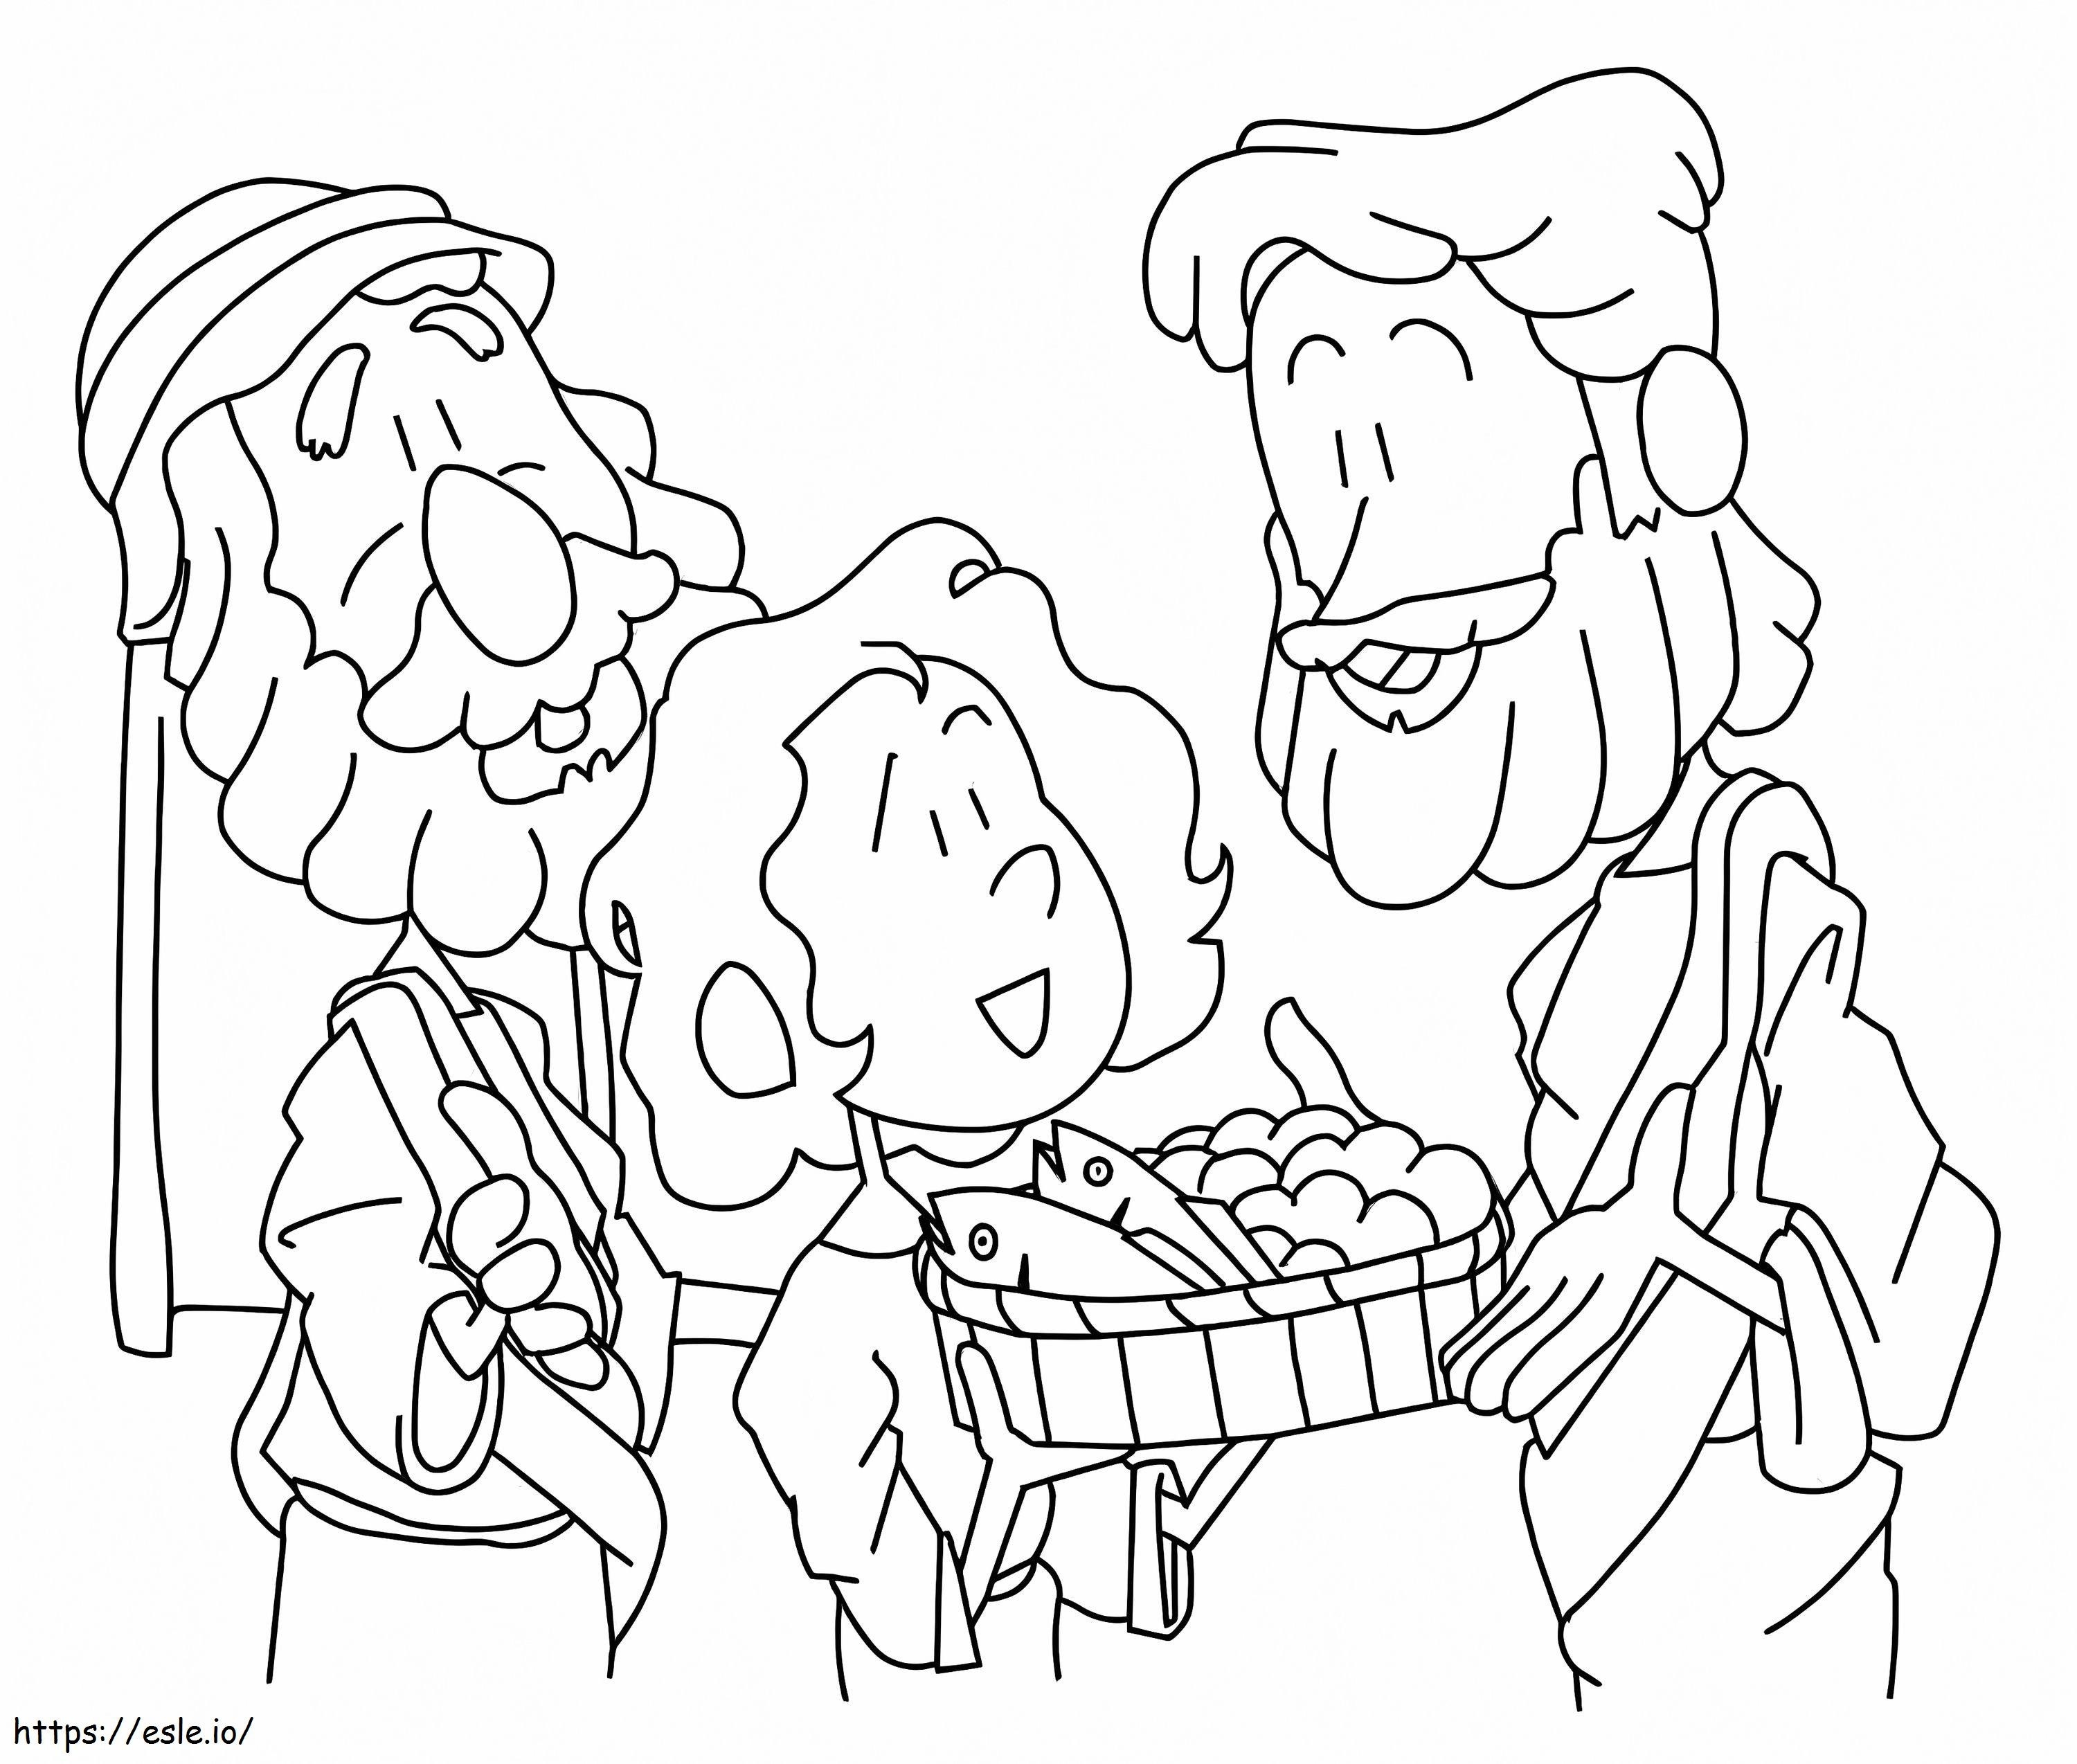 İsa 5000 Kişiyi Bedava Doyurdu boyama